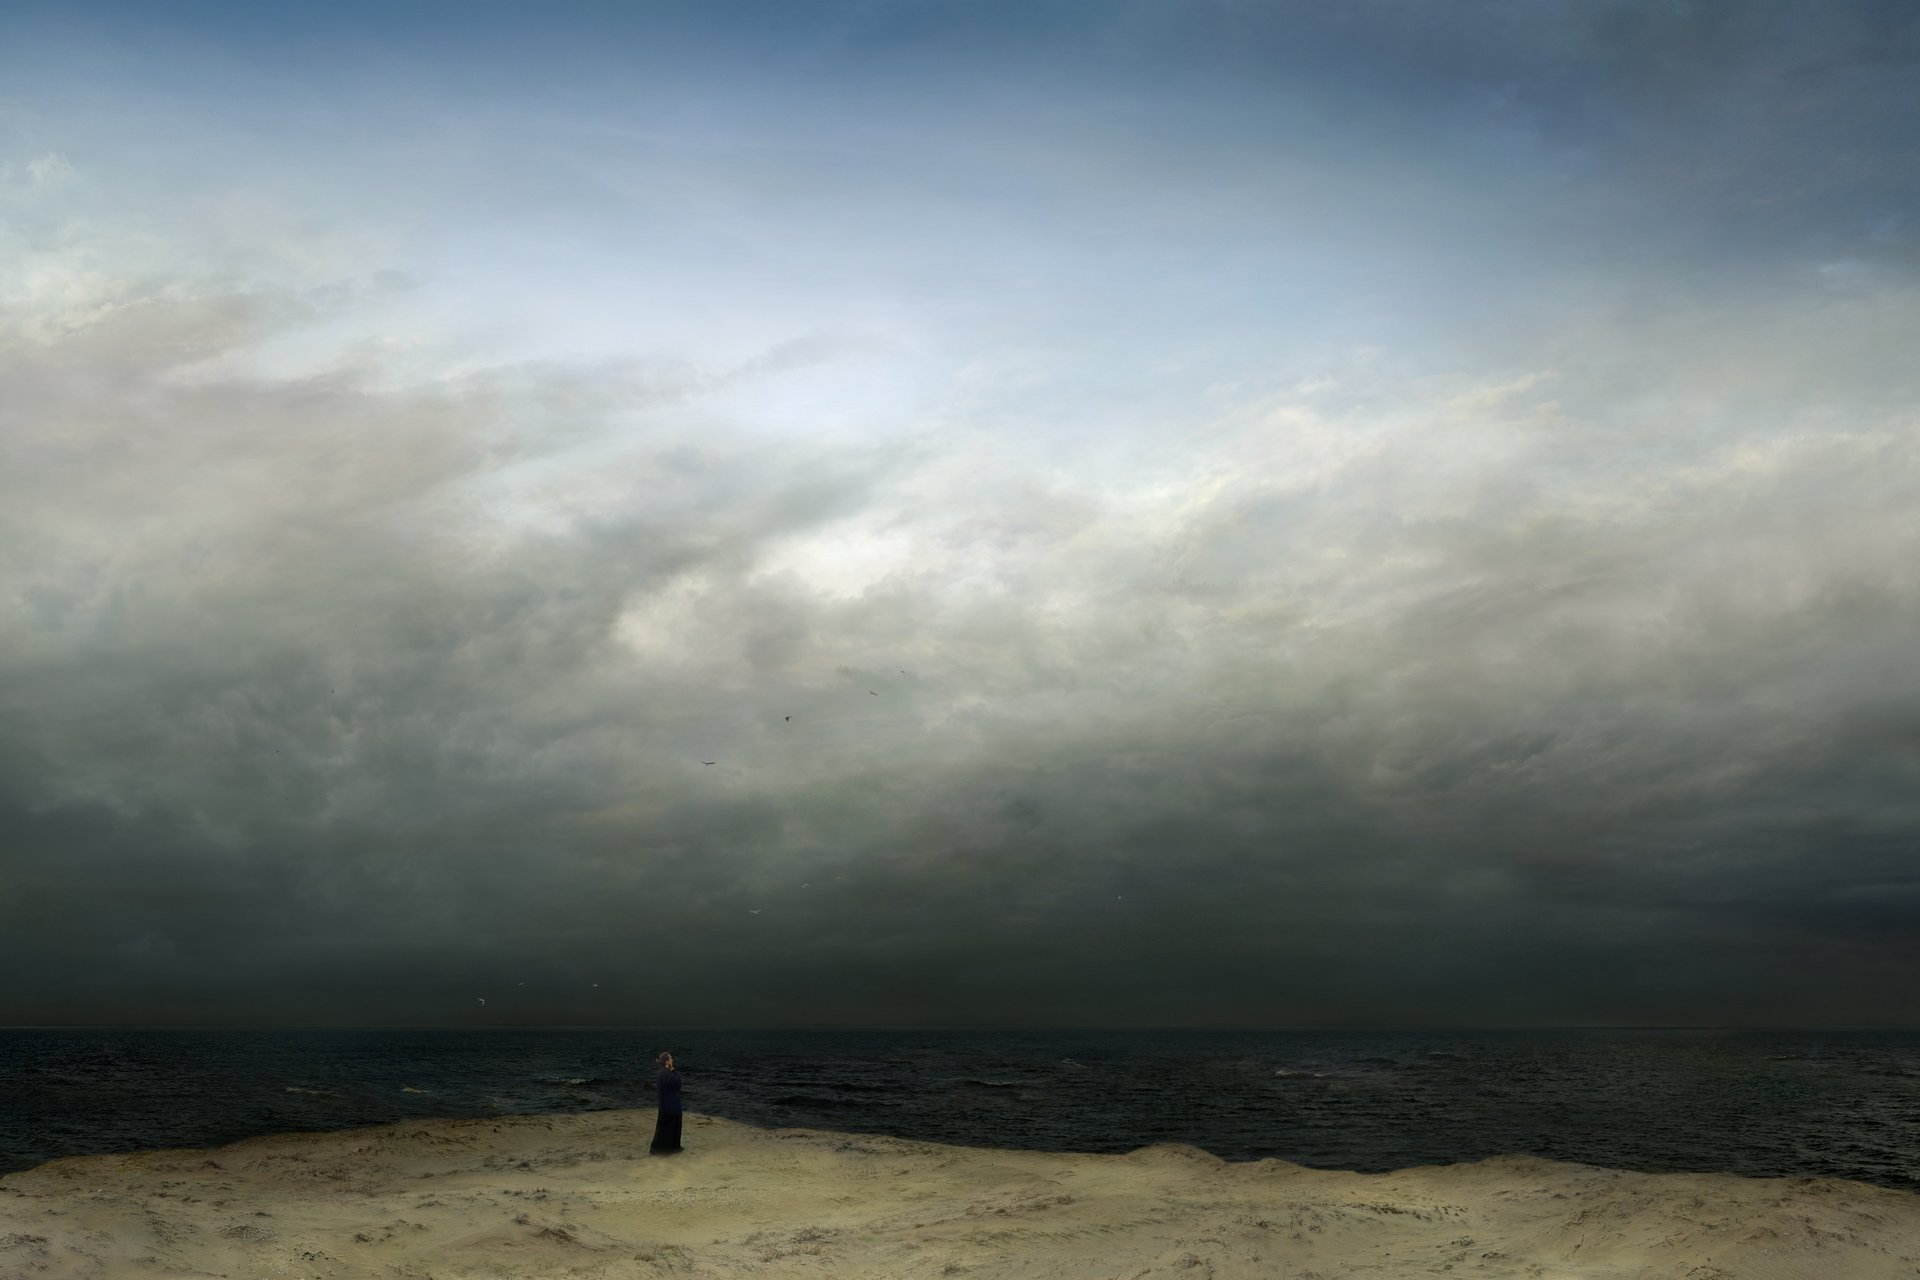 Fotocollage nach dem Gemälde Mönch am Meer von Caspar David Friedrich. Bewölkter Himmel über dunkler See, unten ein schmaler Streifen Strand mit einer dunkel gekleideten Figur links der Mitte.